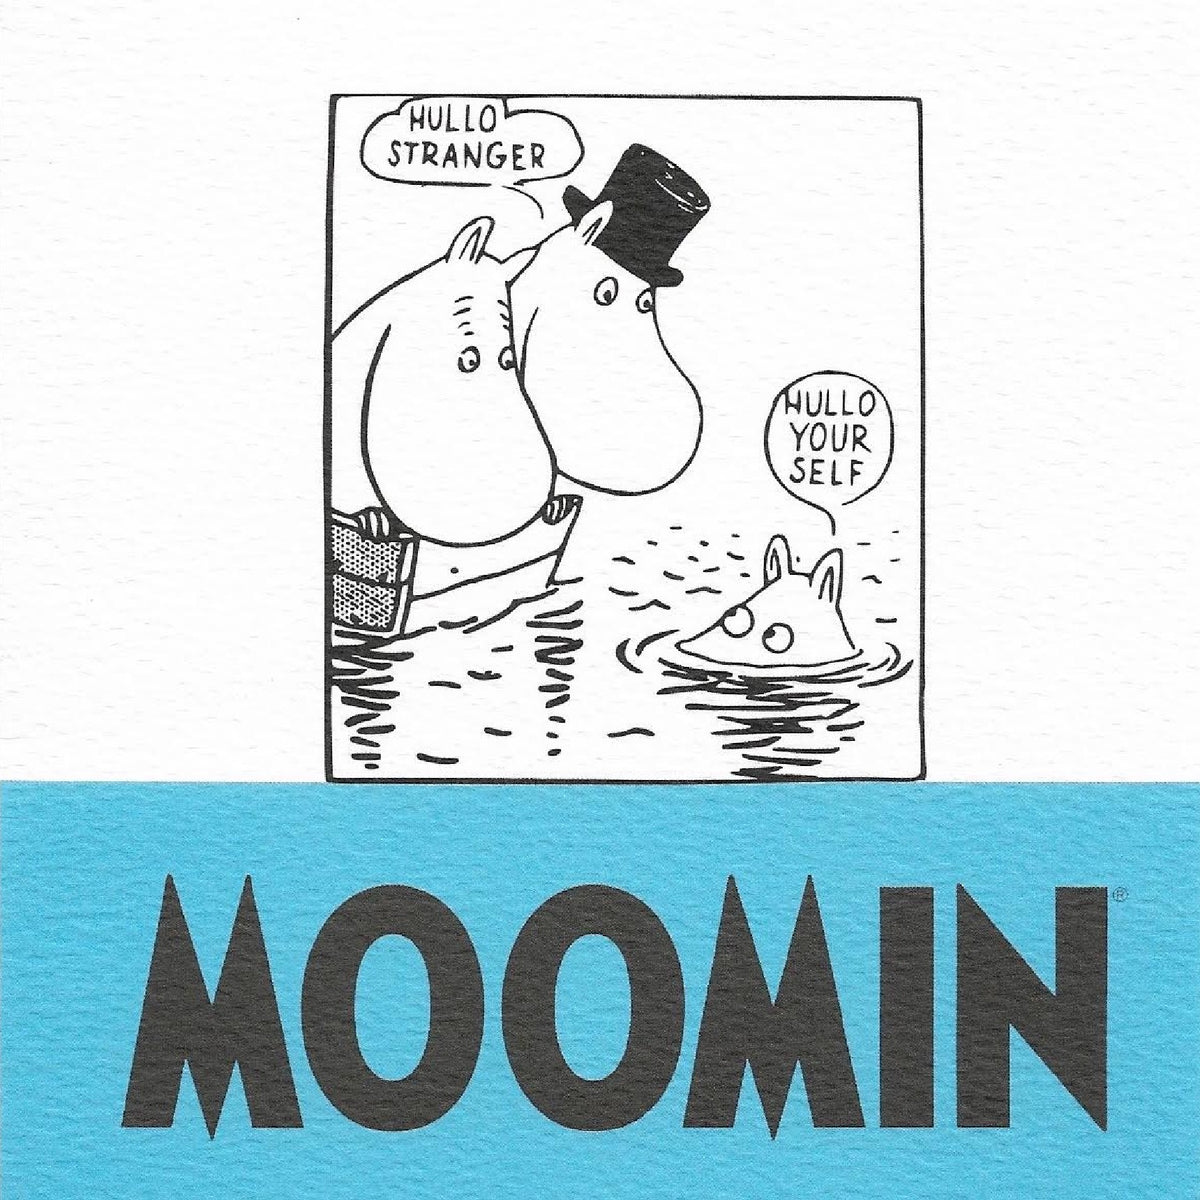 Moomin Greeting Card Hullo Stranger